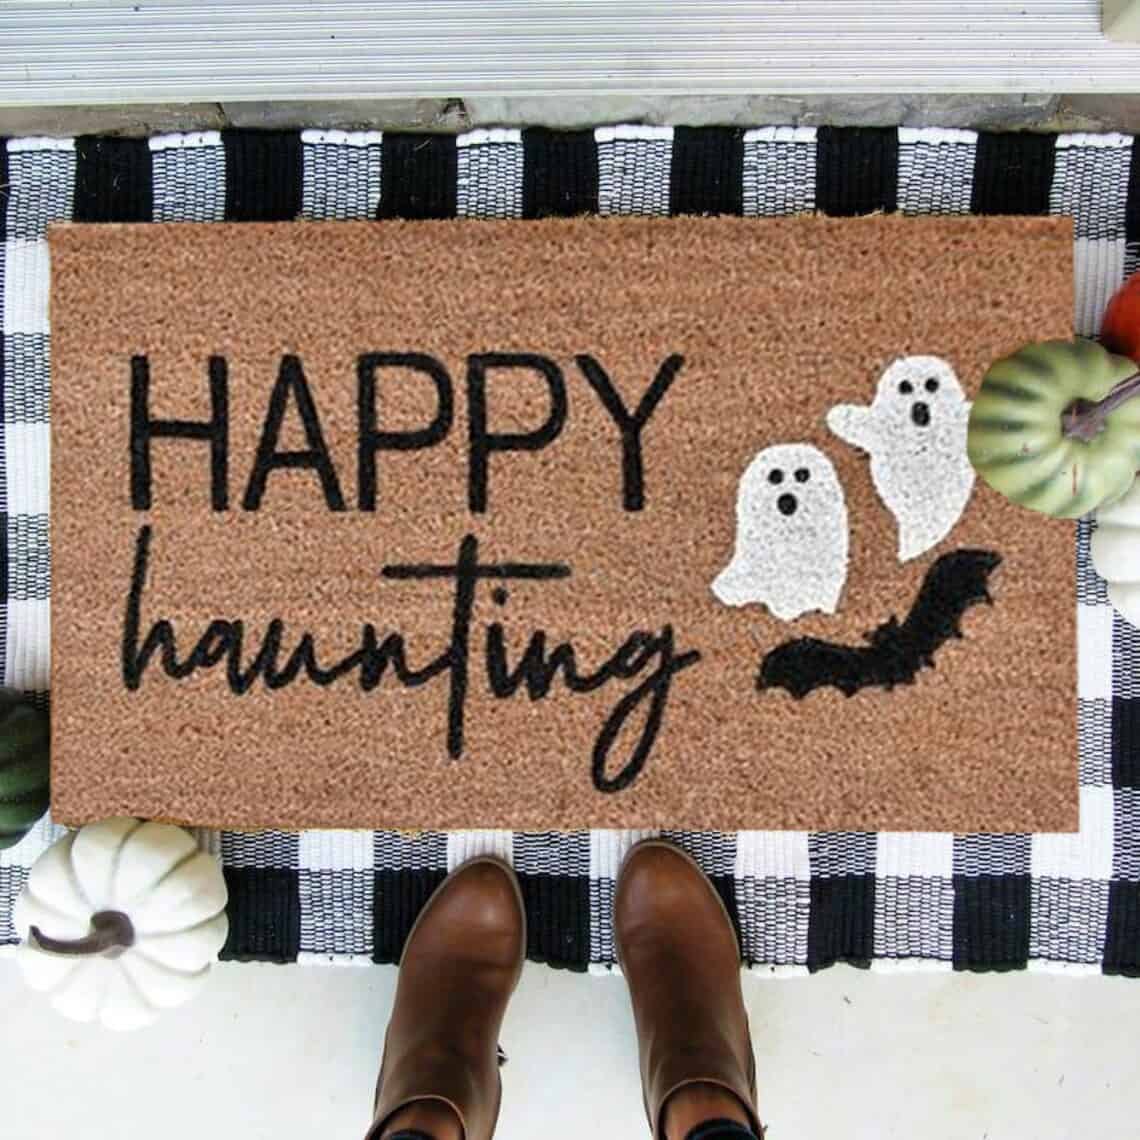 Happy Haunting Halloween doormat in front of door with buffalo check rug underneath.